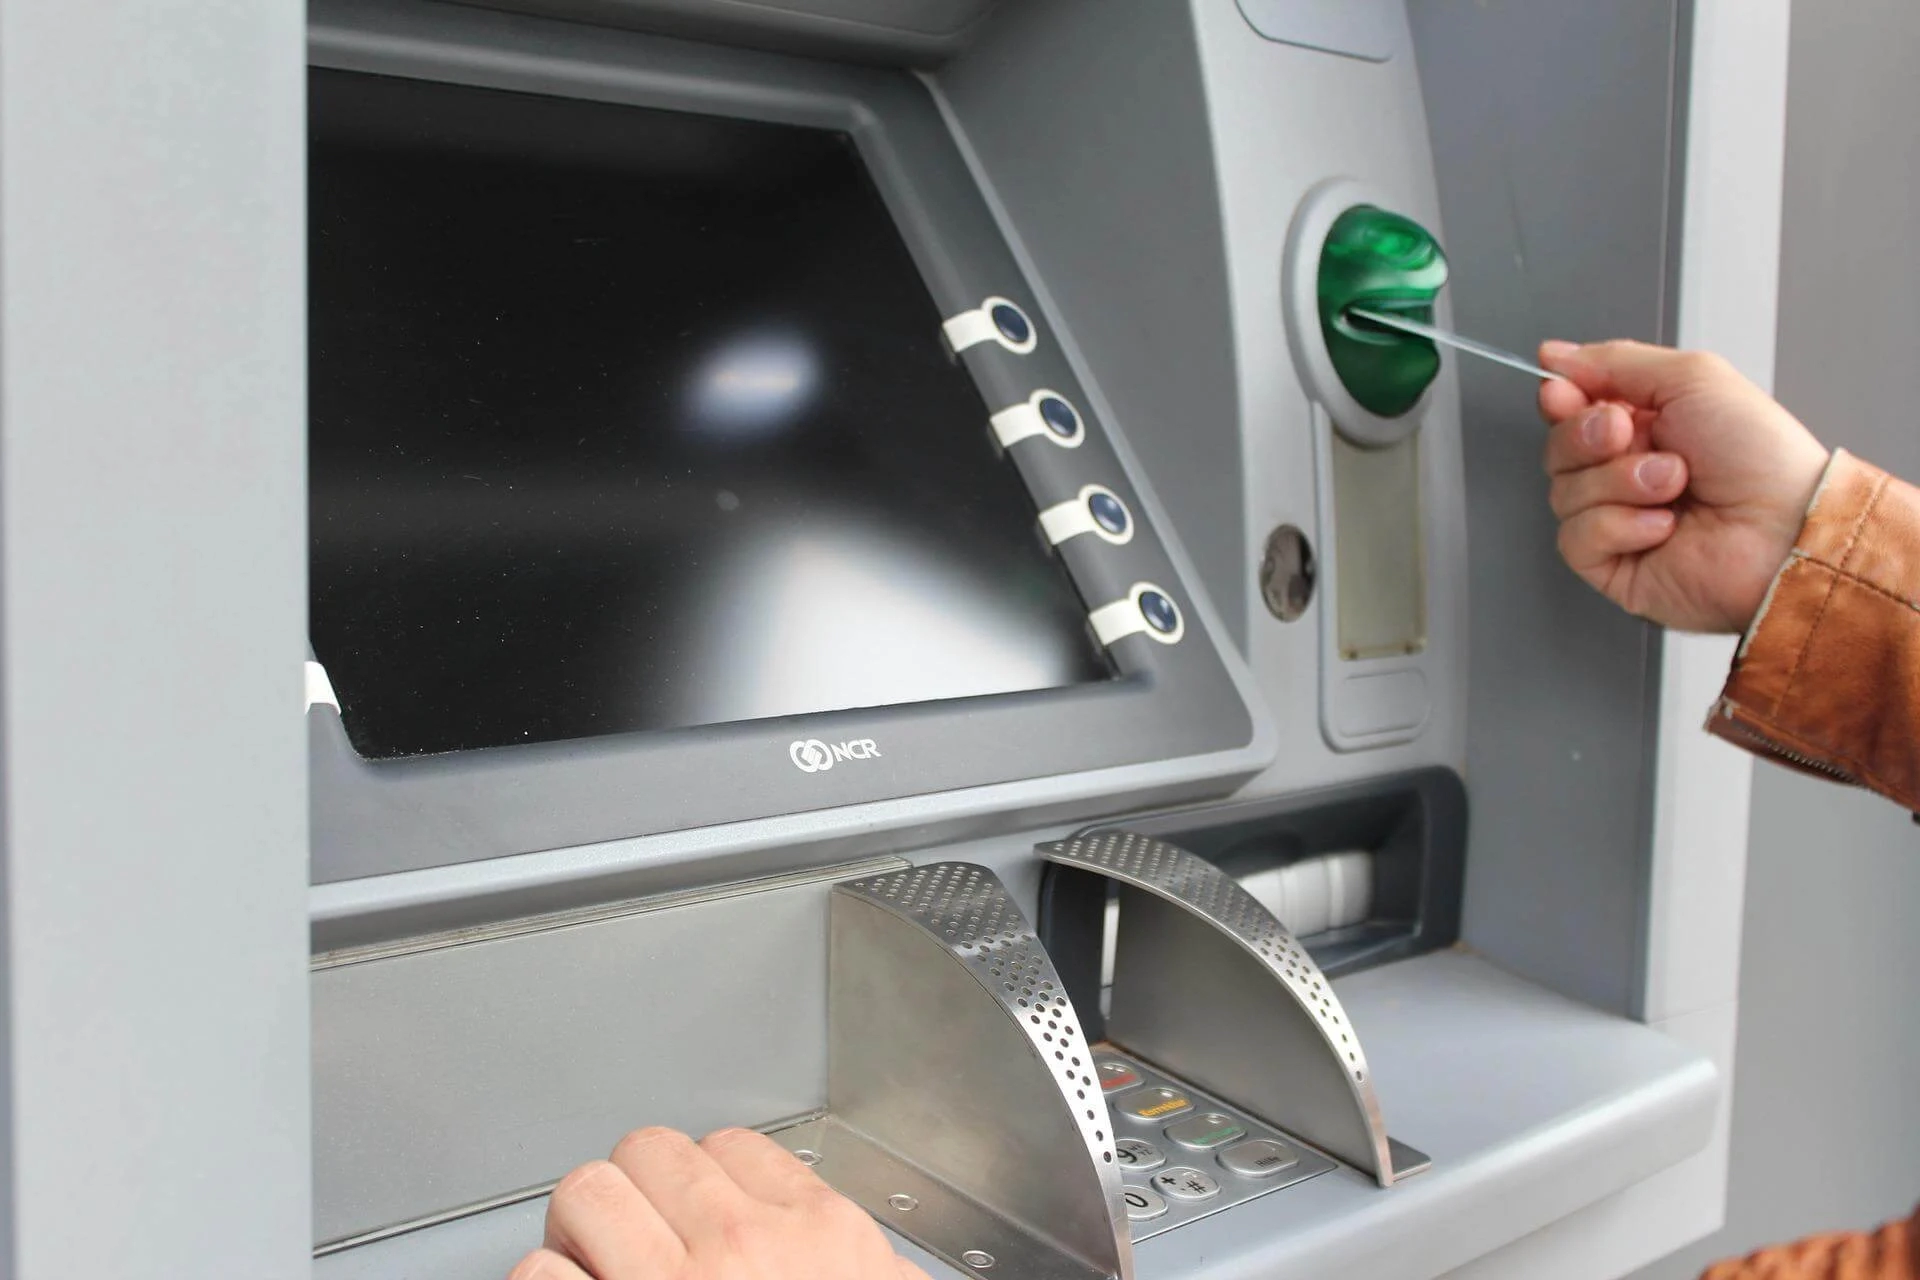 يقوم السارق باستخدام جهاز إلكتروني صغير يُثبت على لوحة الصراف الآلي في مكان وضع بطاقة البنك